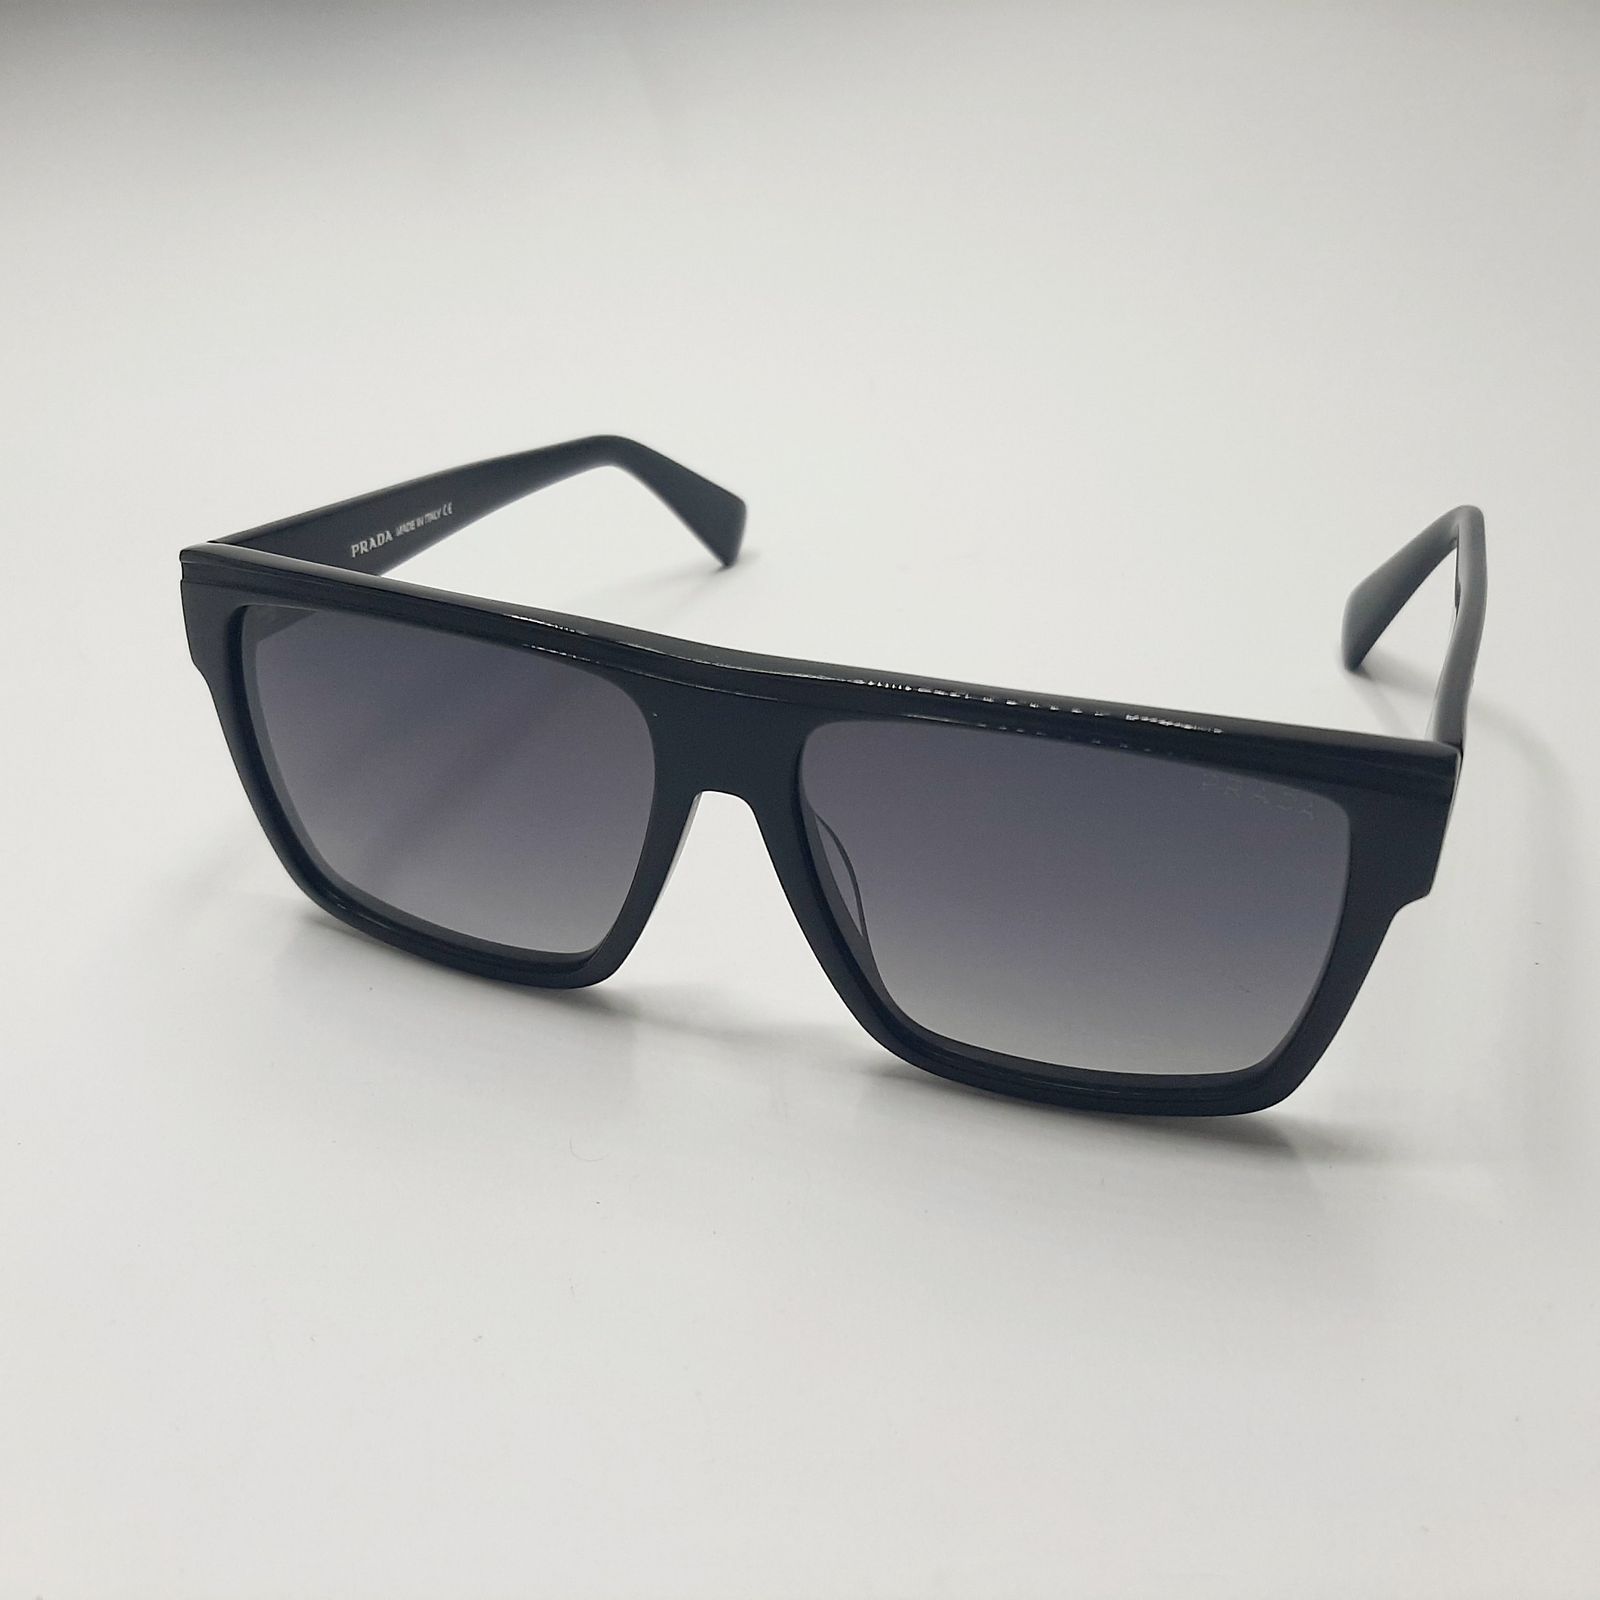 عینک آفتابی پرادا مدل VS8007c2 -  - 3